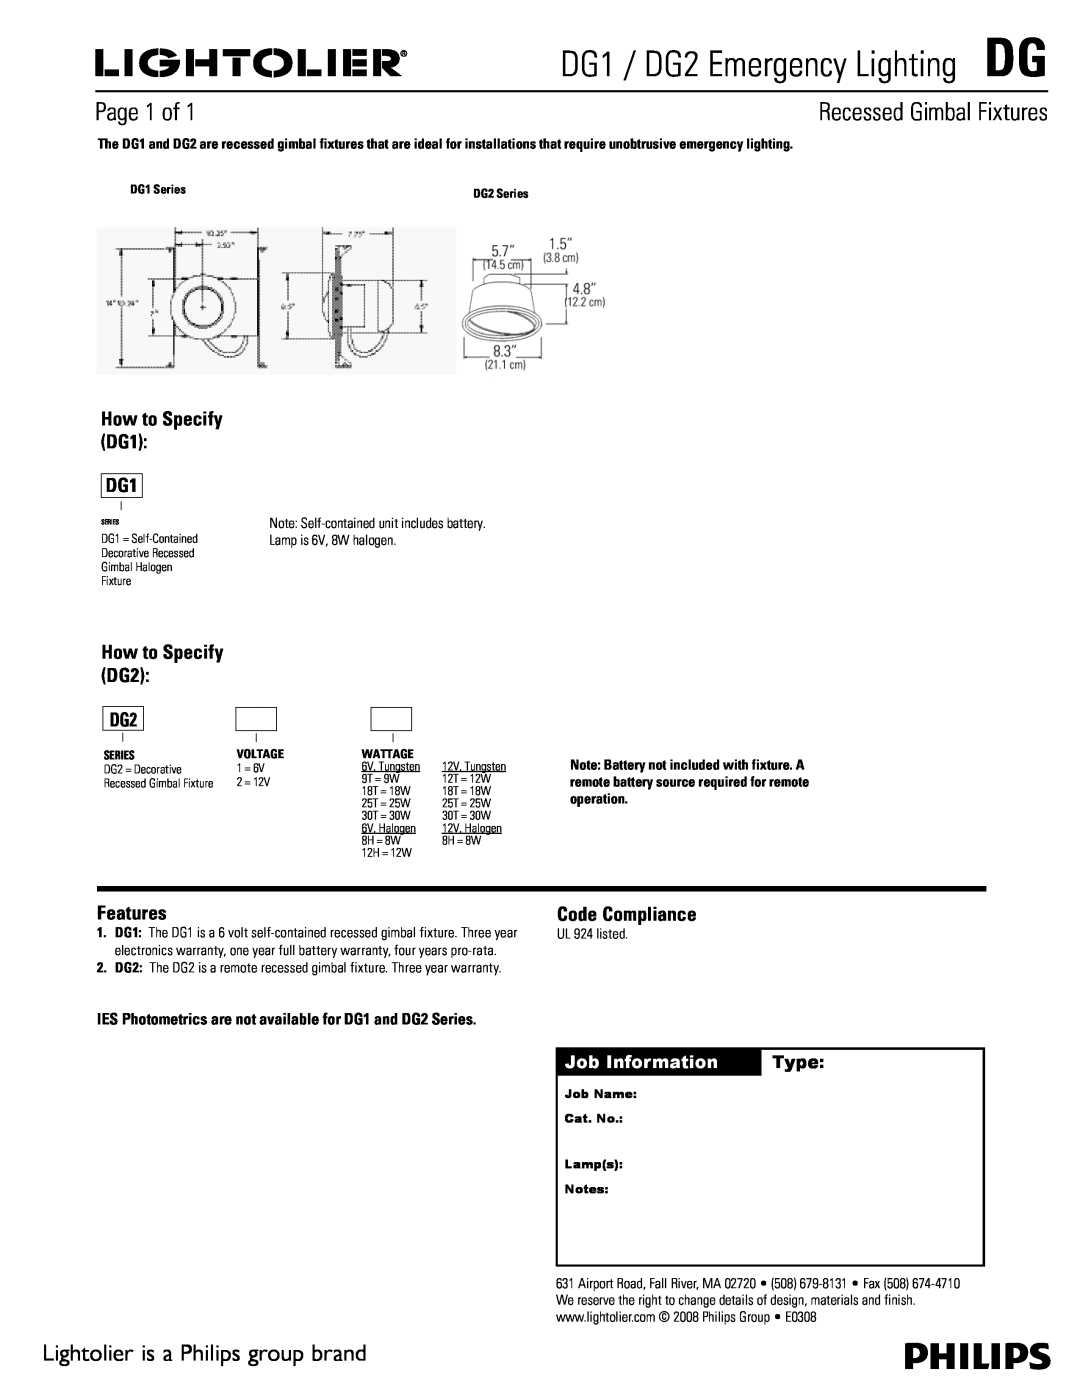 Lightolier warranty DG1 / DG2 Emergency LightingDG, Recessed Gimbal Fixtures, Page 1 of, Features, Code Compliance 